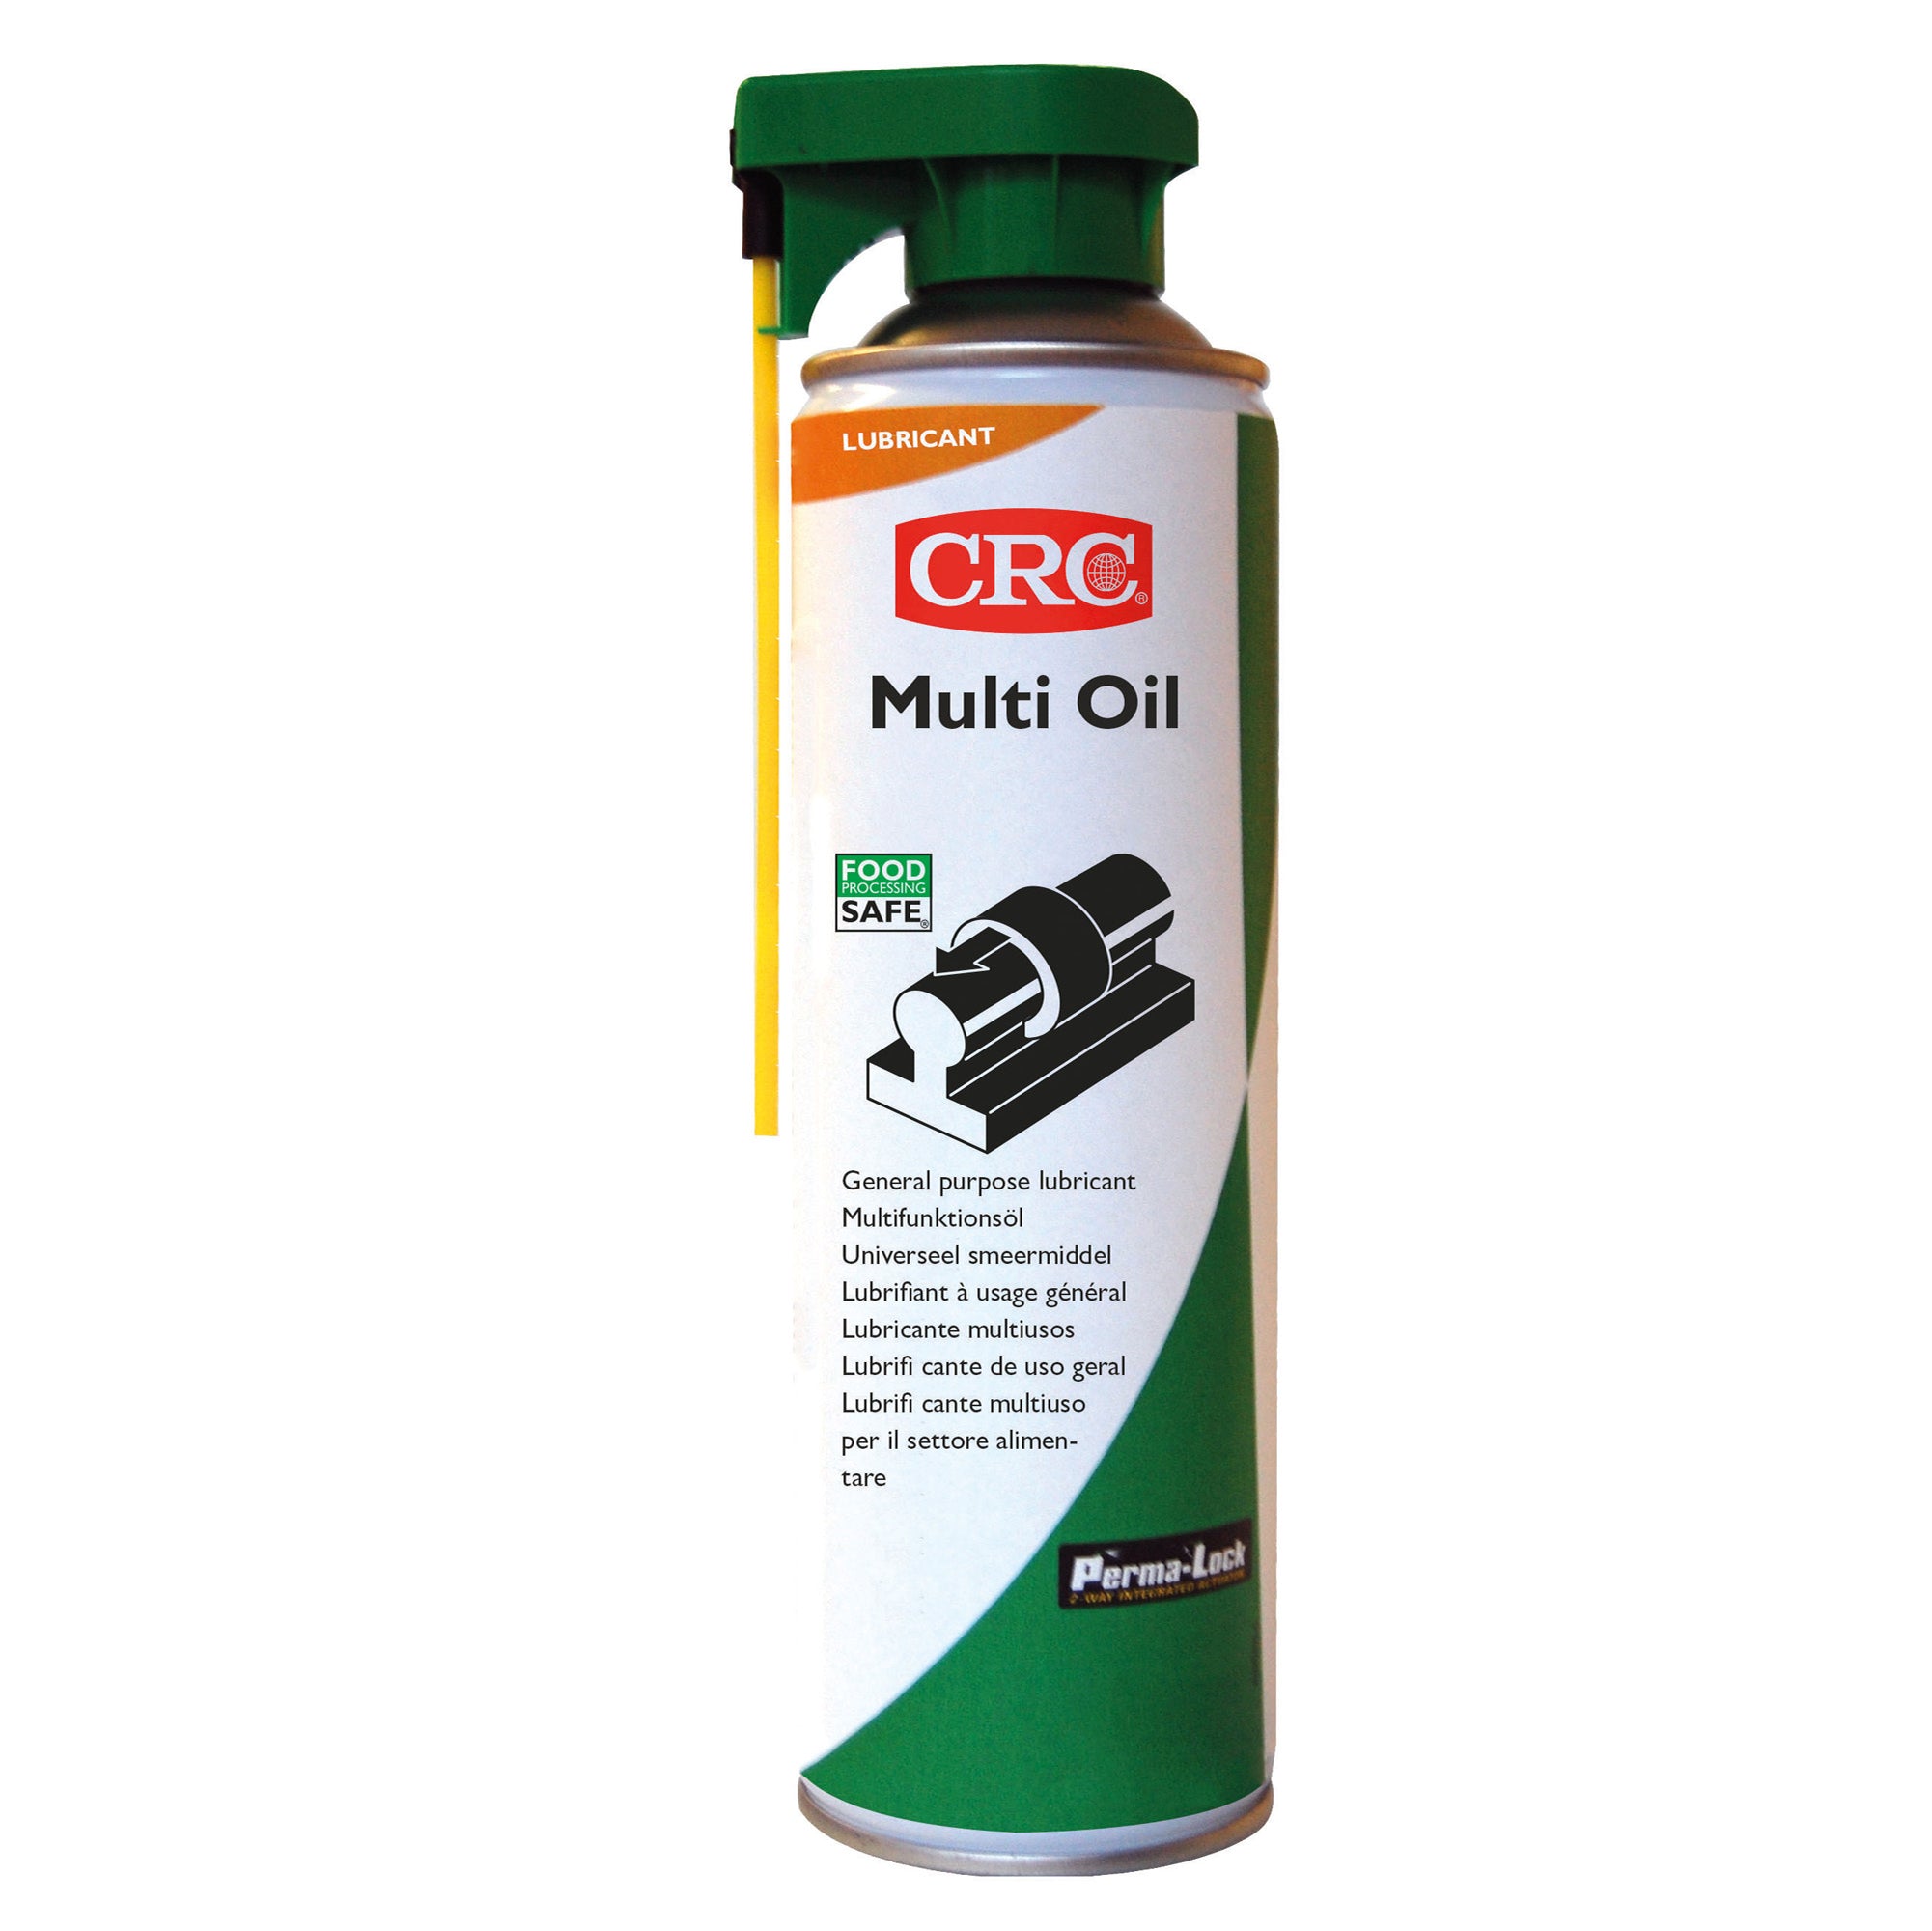 cfg-multi-oil-lubrificante-multiuso-macchinari-500ml